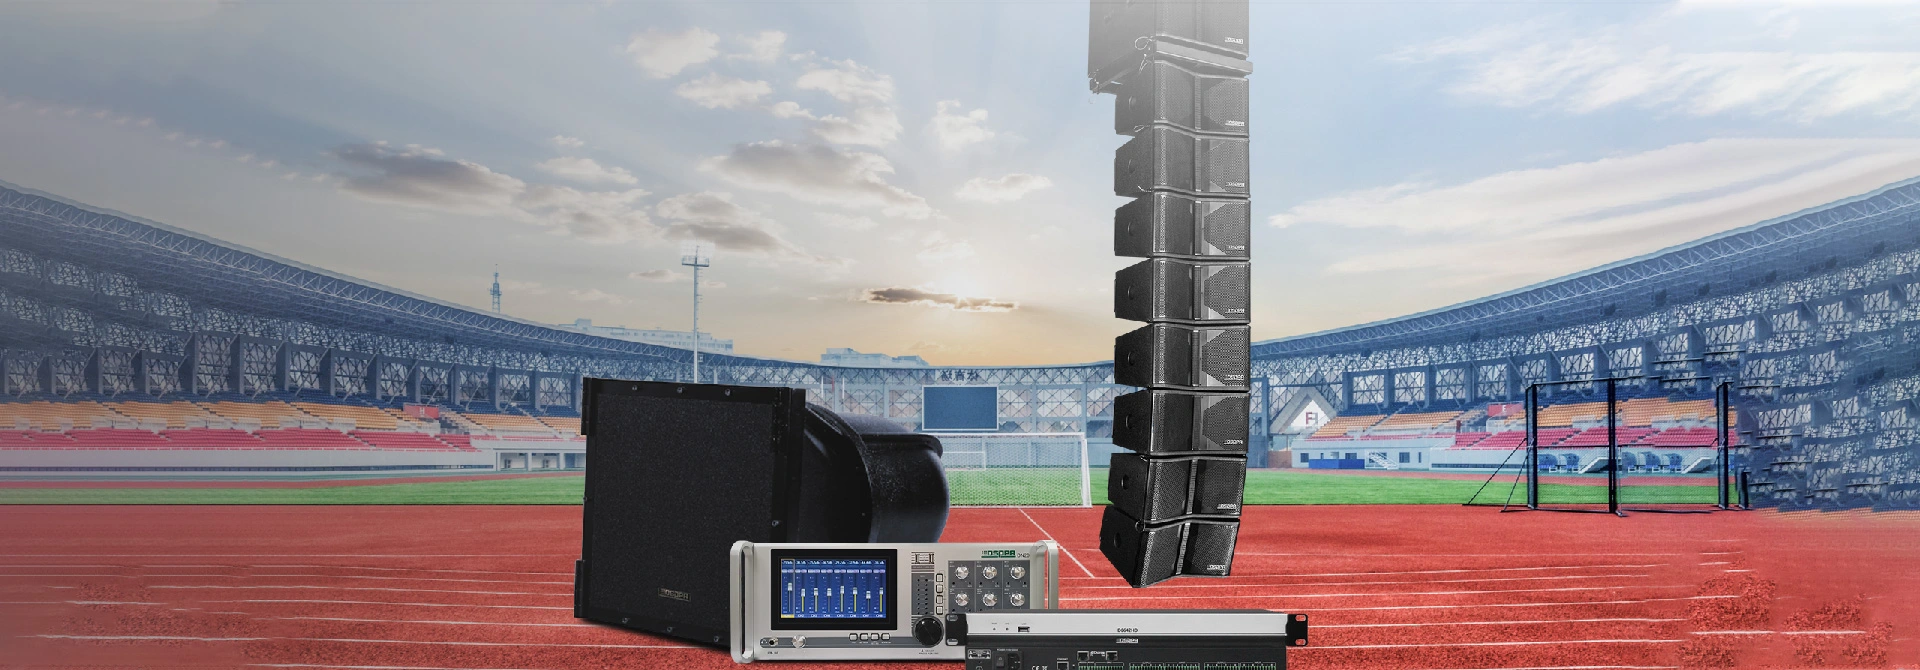 Soluzione di sistema audio professionale per grandi stadi all'aperto